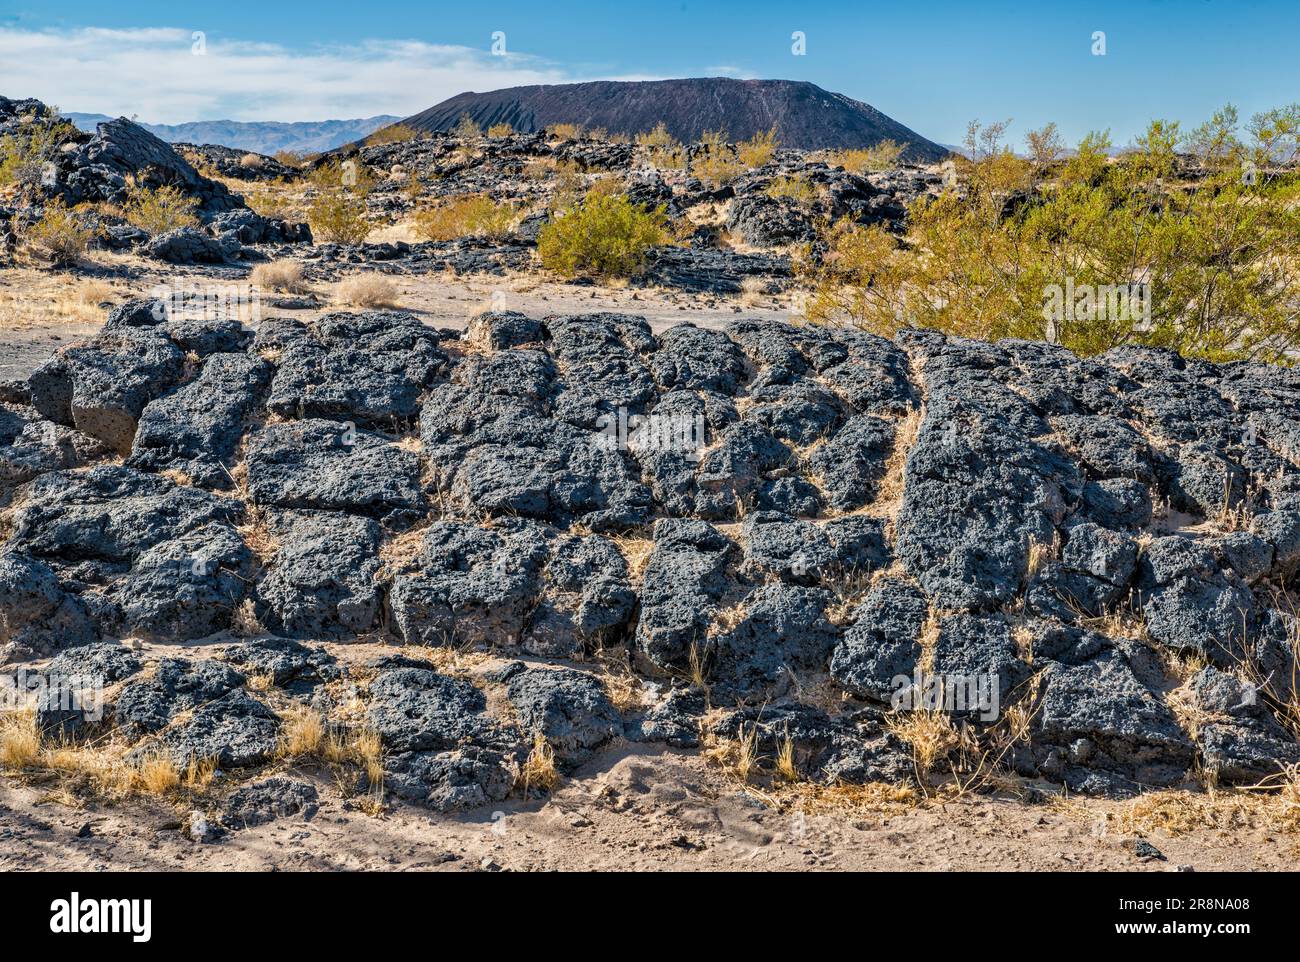 Cráter Amboy, volcán de cono de ceniza, campo de lava, en el Monumento Nacional Mojave Trails, cerca de Amboy, California, Estados Unidos Foto de stock